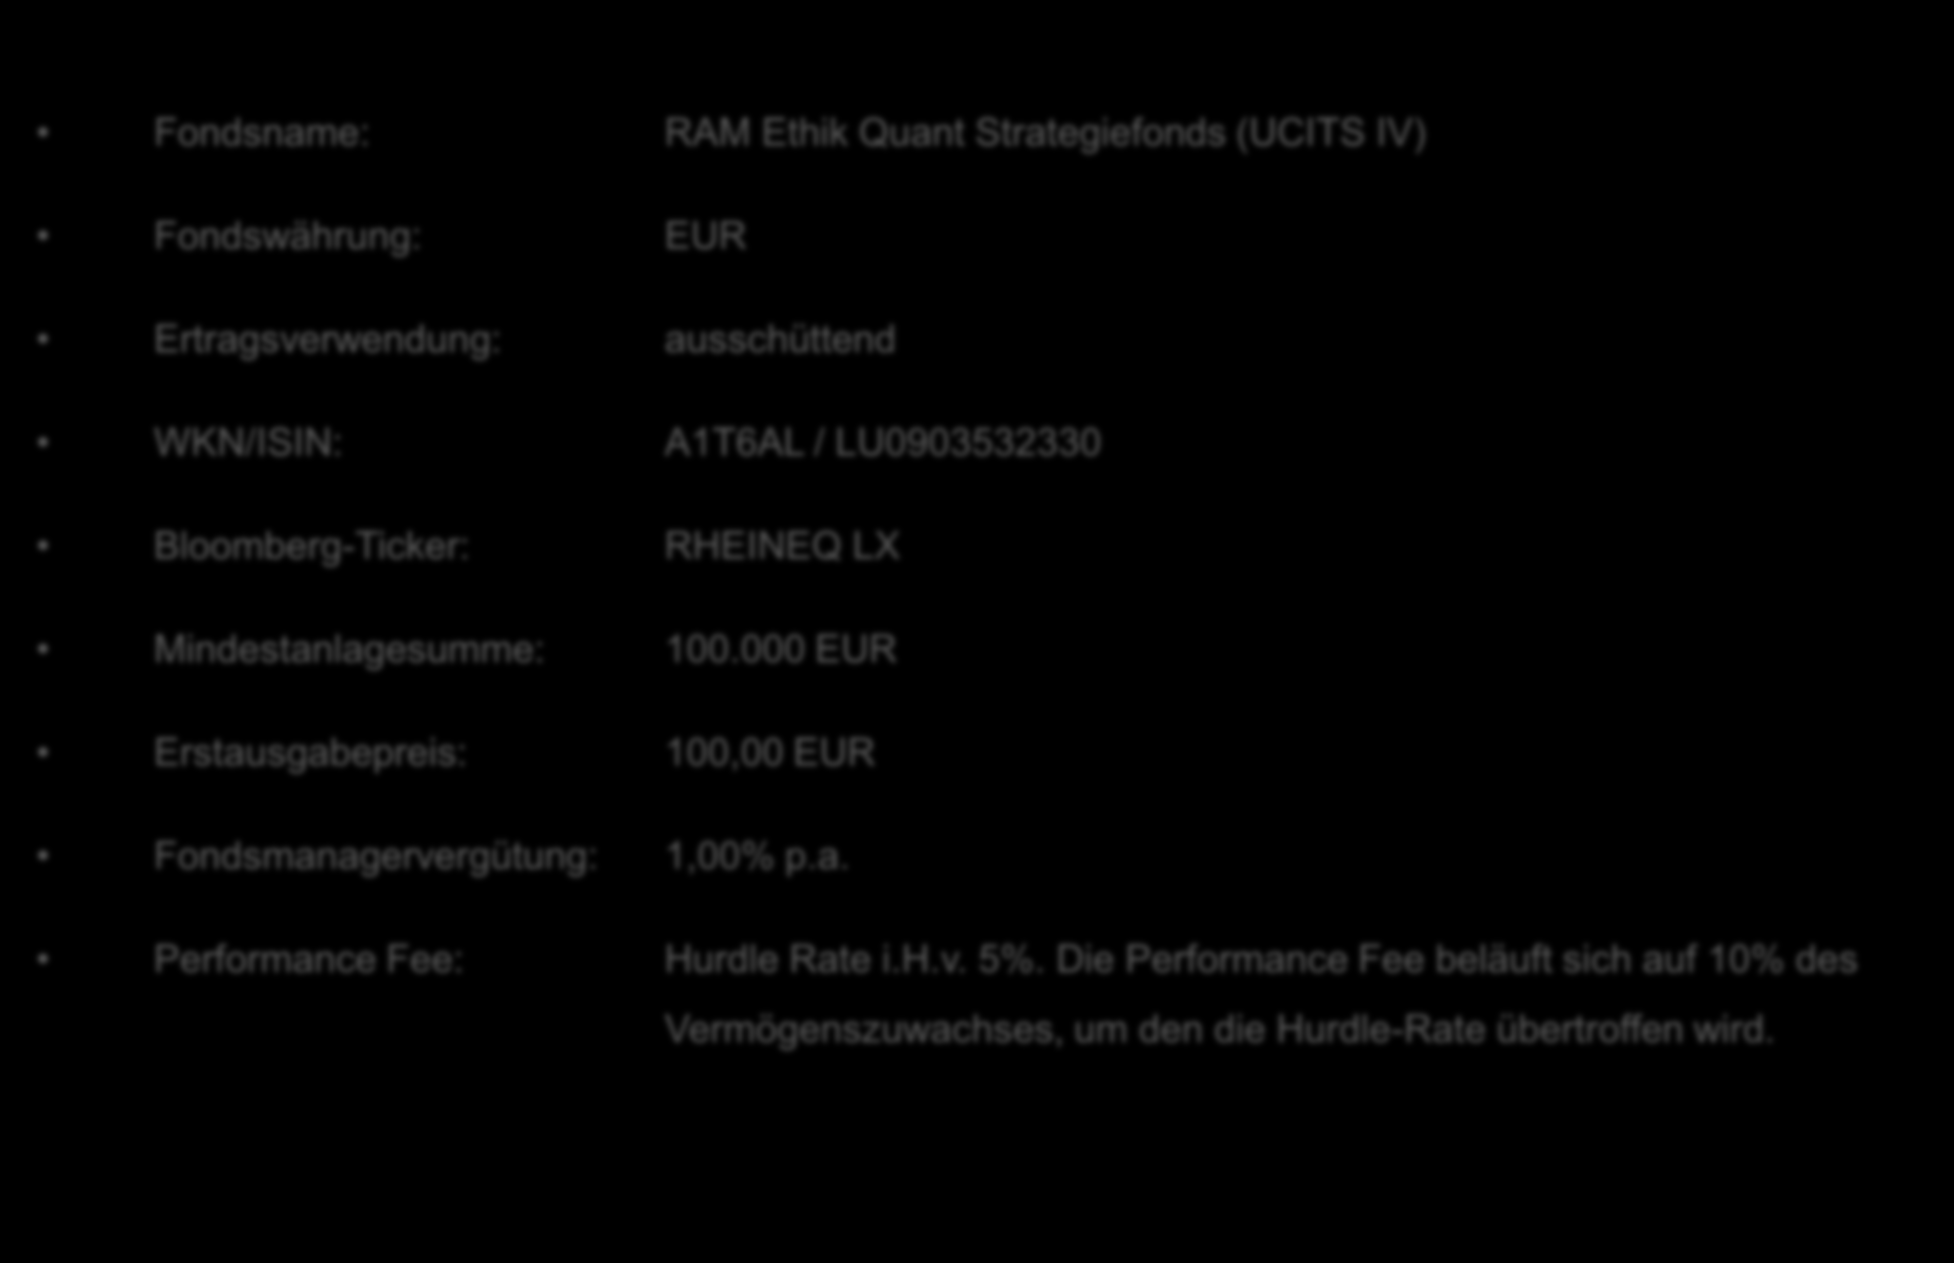 RAM Ethik Quant Strategiefonds 9 Daten zum Fonds Fondsname: RAM Ethik Quant Strategiefonds (UCITS IV) Fondswährung: EUR Ertragsverwendung: ausschüttend WKN/ISIN: A1T6AL / LU0903532330